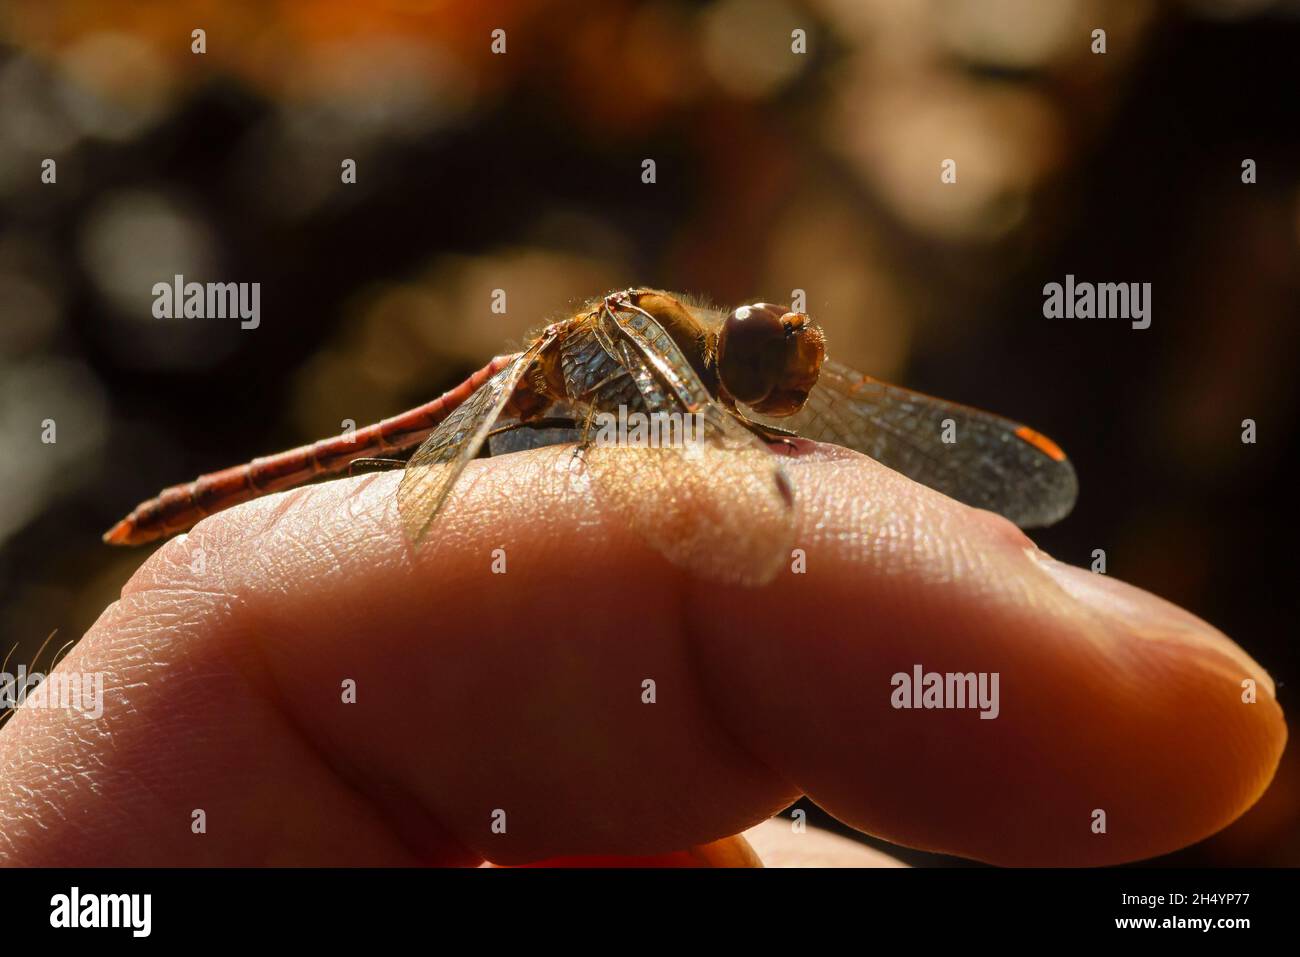 Une petite libellule rouge assise sur un doigt, une libellule rouge sang-bruyère se trouve sur un doigt, Sympetrum sanguineum Banque D'Images